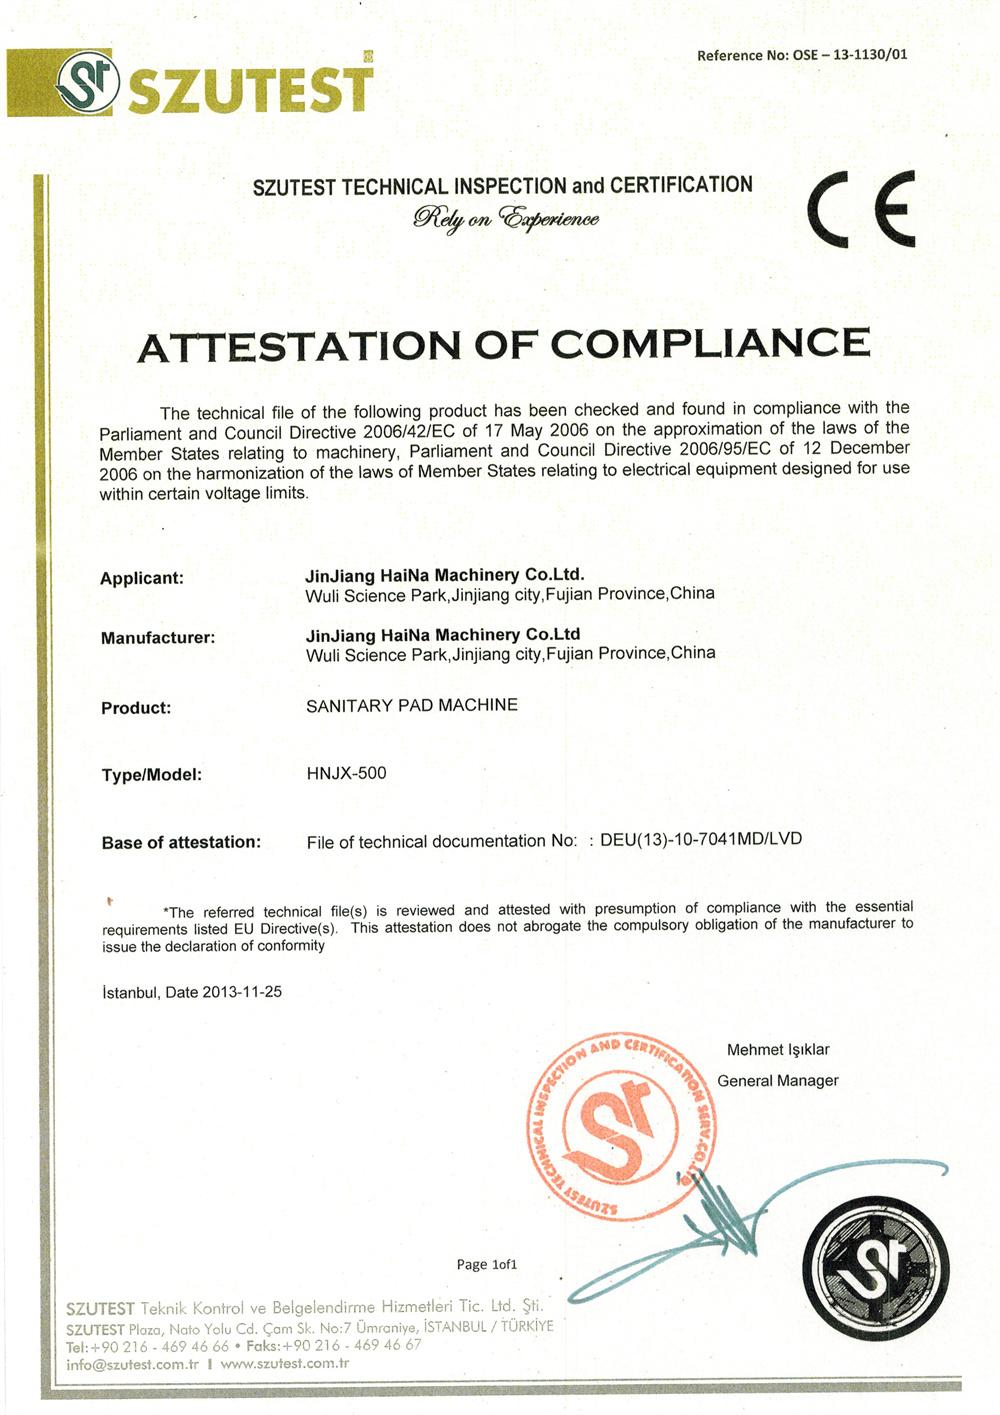 Haina Sanitary Pad Making Machine CE Certificate